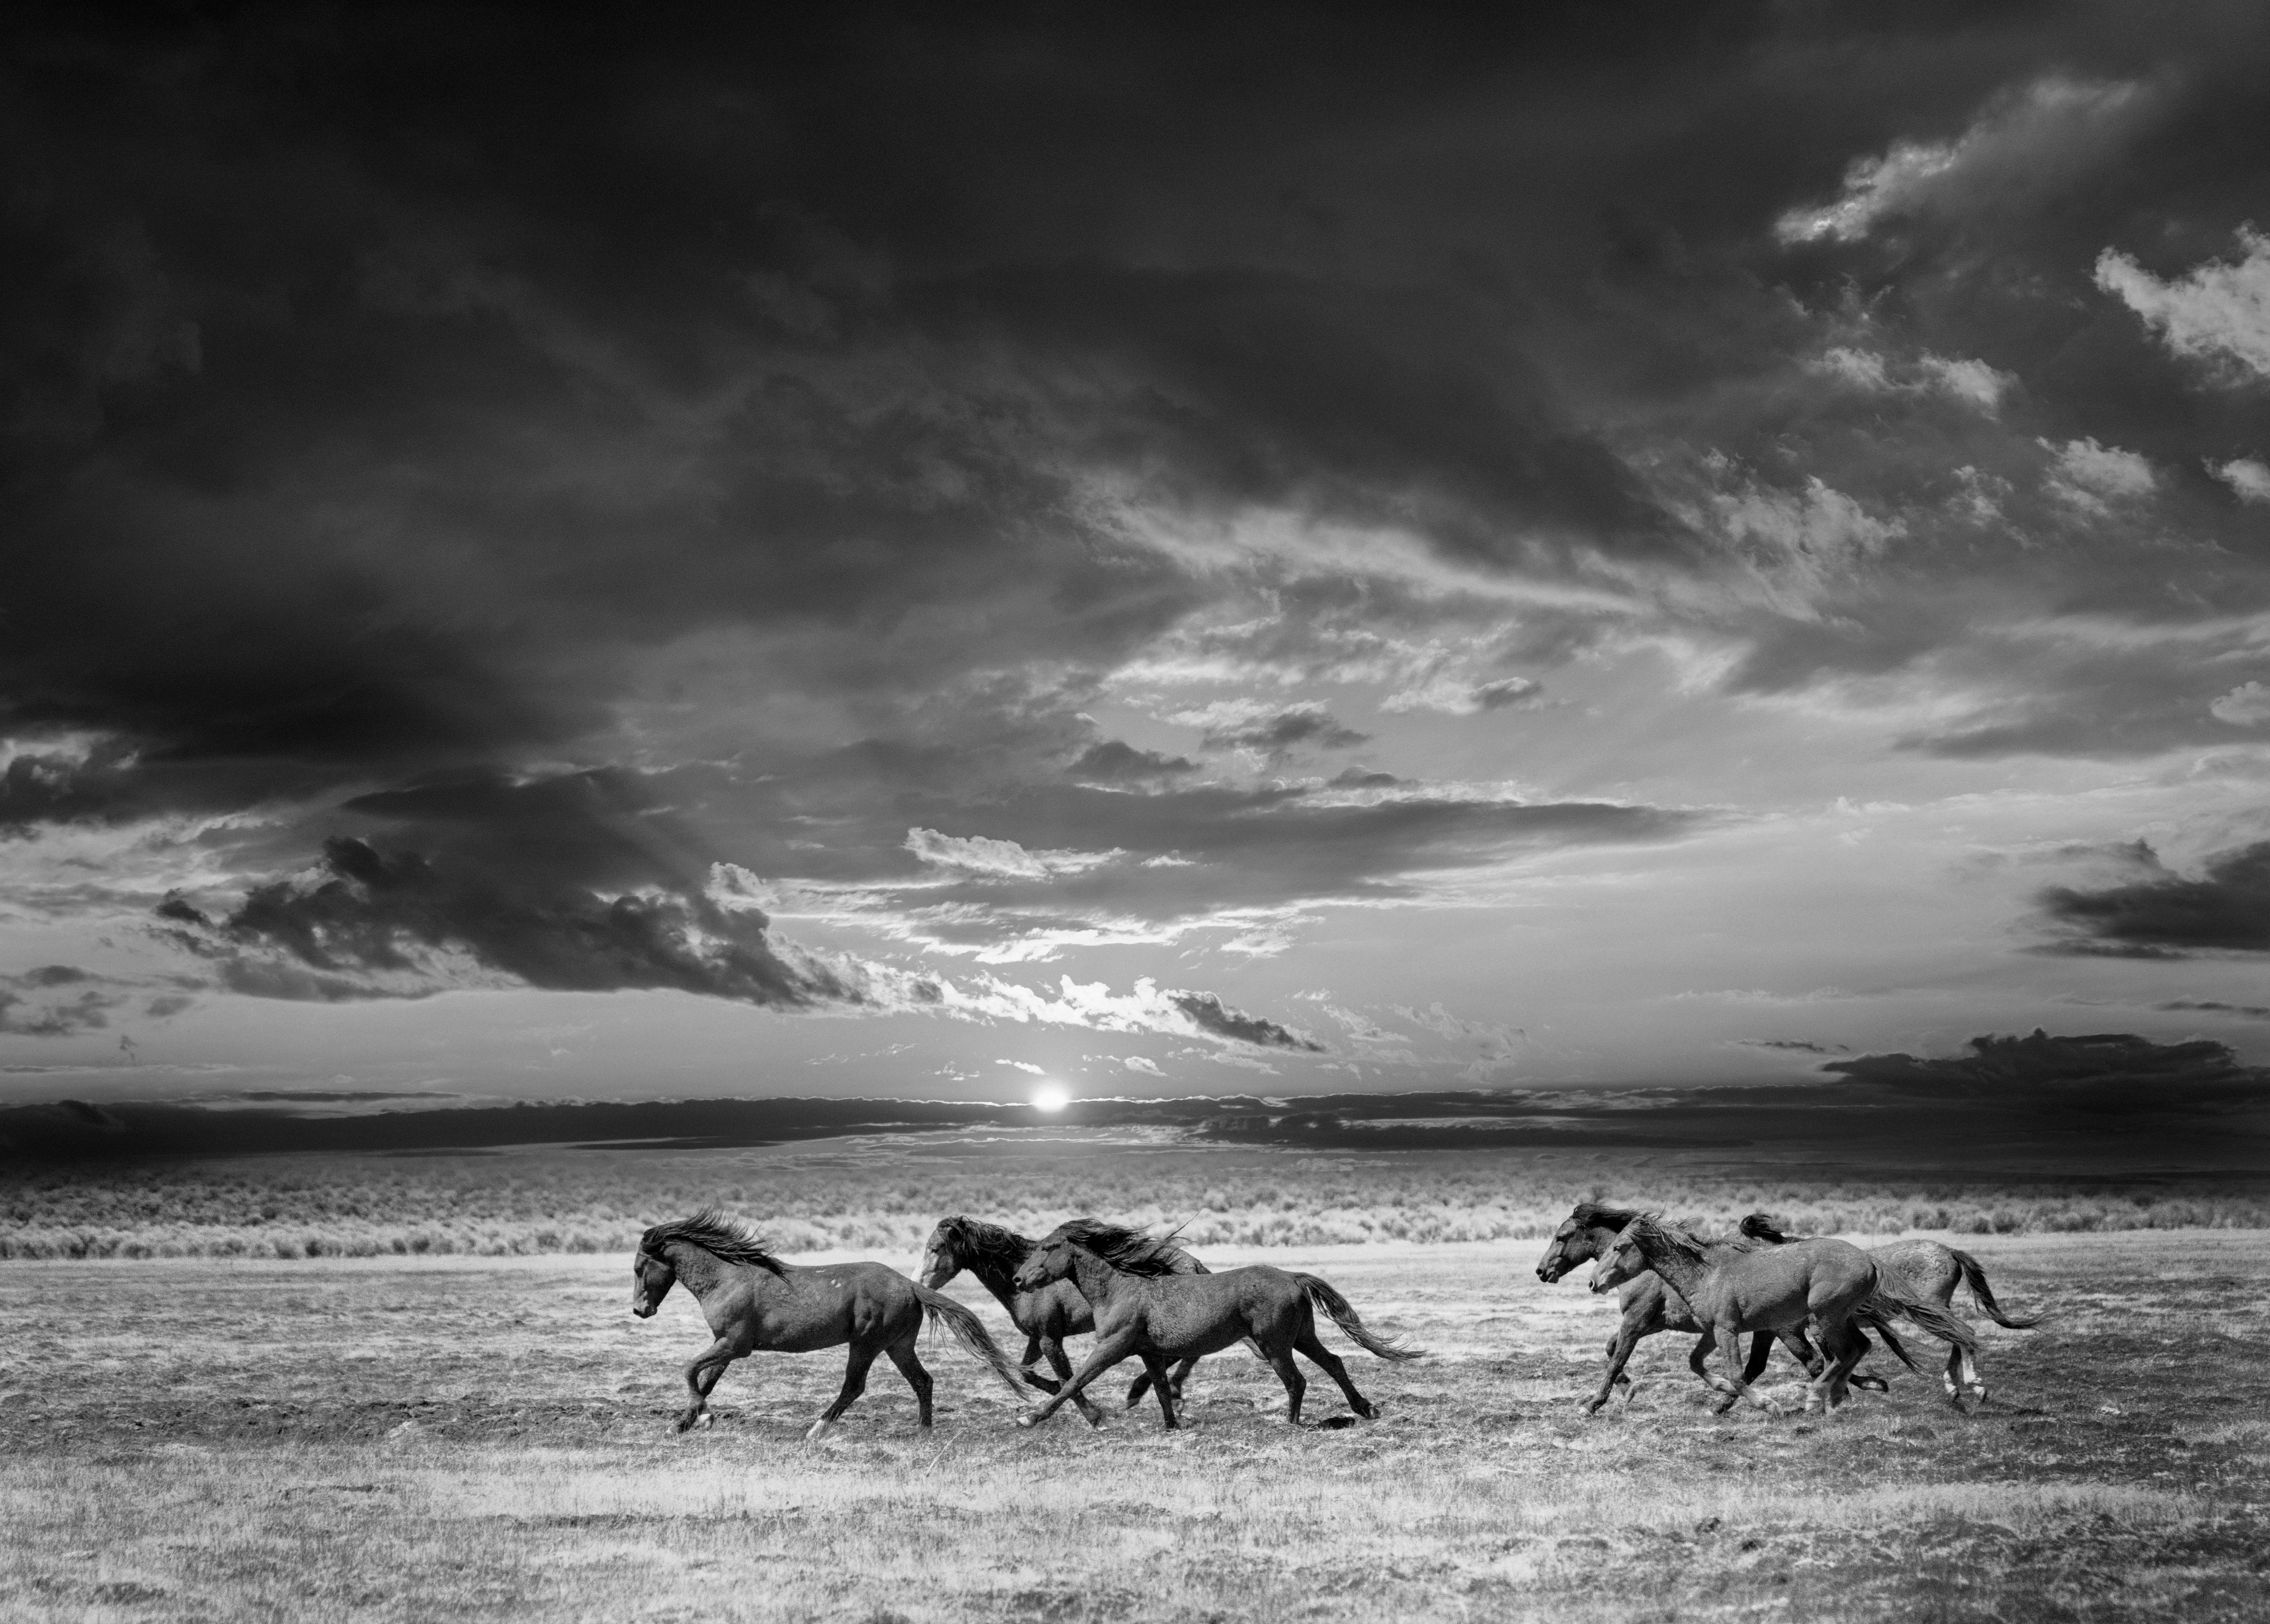 Shane Russeck Black and White Photograph – Chasing the Light- 60x40 Schwarz-Weiß-Fotografie mit Wildpferden, Senf, unsigniert